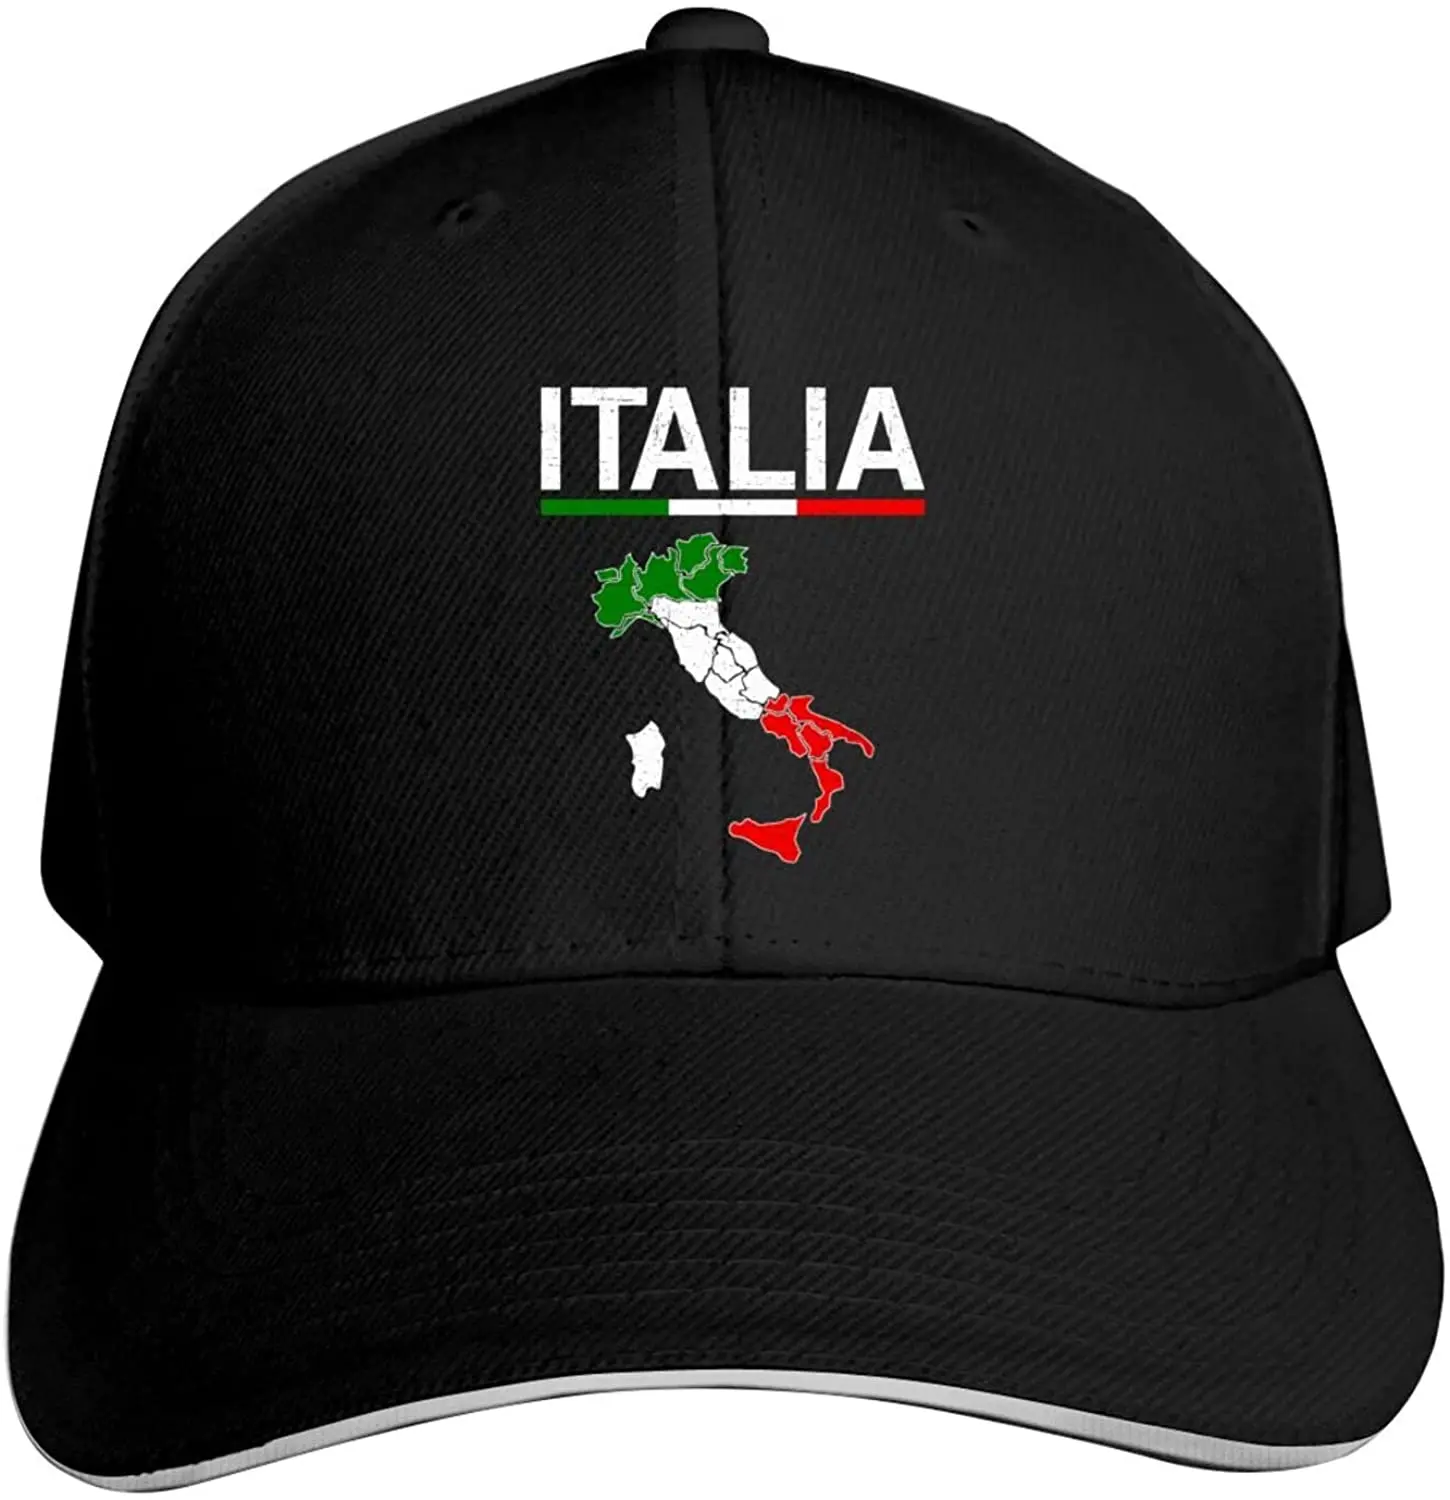 Итальянский флаг Италии кепка регулируемая Защитная шапка сэндвич Кепка